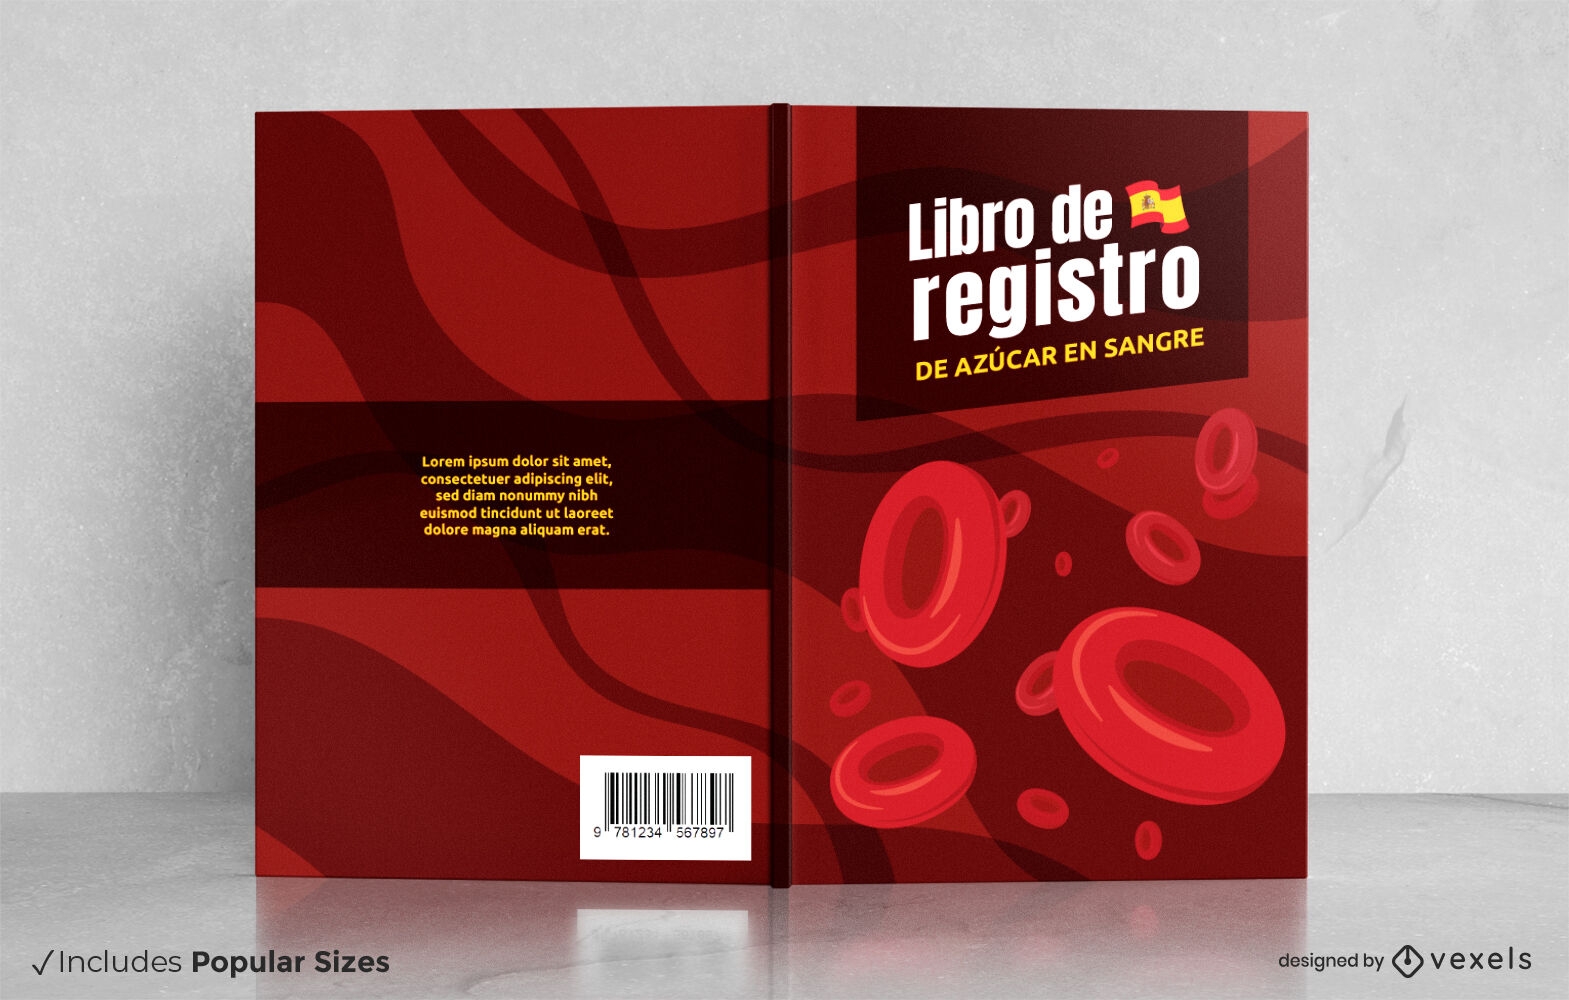 Grande a?car no design da capa do livro de registro de sangue